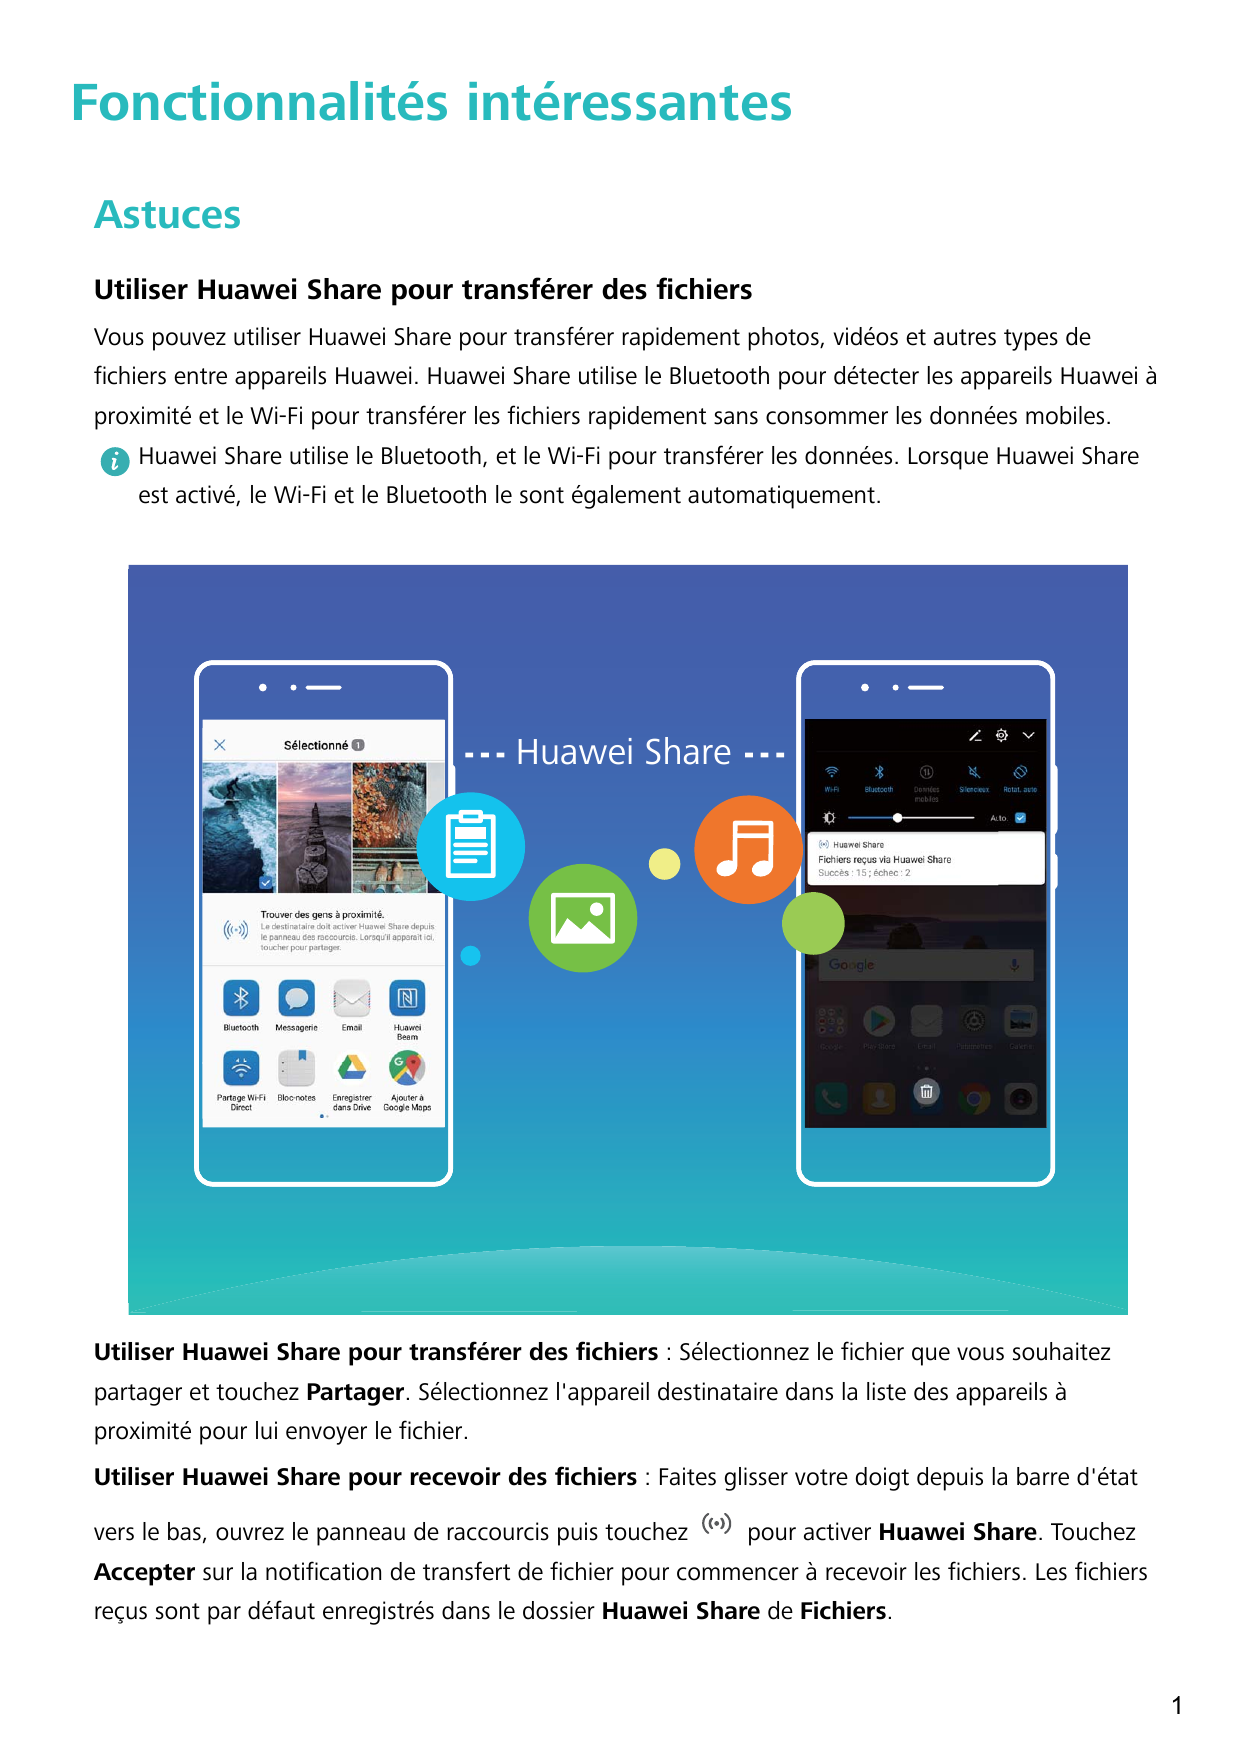 Fonctionnalités intéressantesAstucesUtiliser Huawei Share pour transférer des fichiersVous pouvez utiliser Huawei Share pour tra